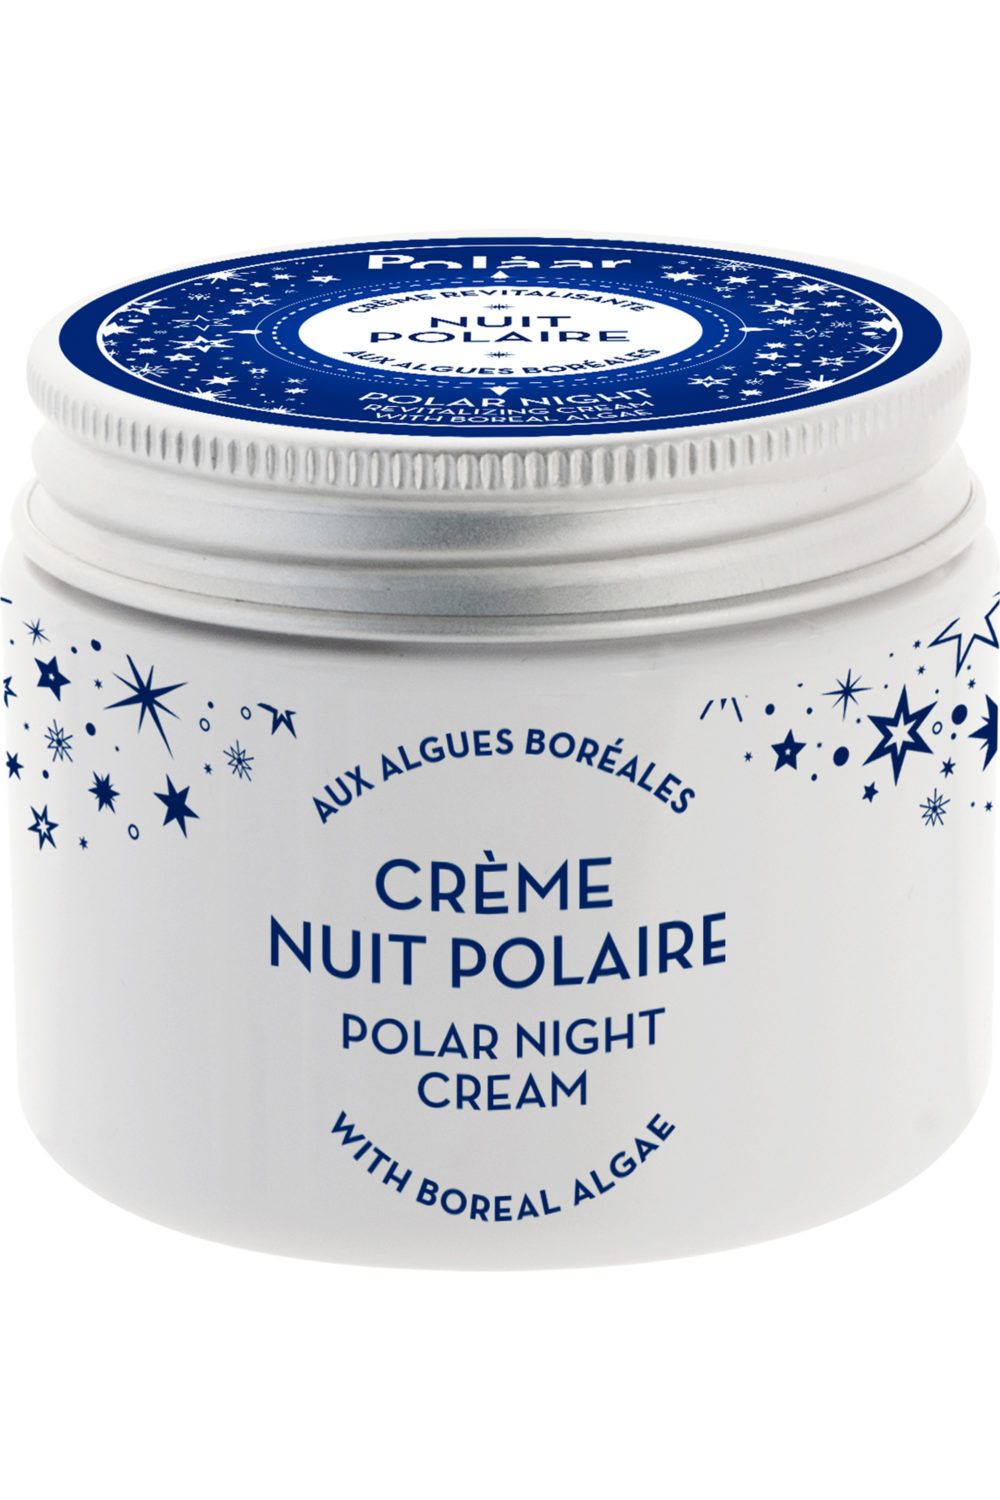 Polaar - Crème Revitalisante Nuit Polaire aux Algues Boréales